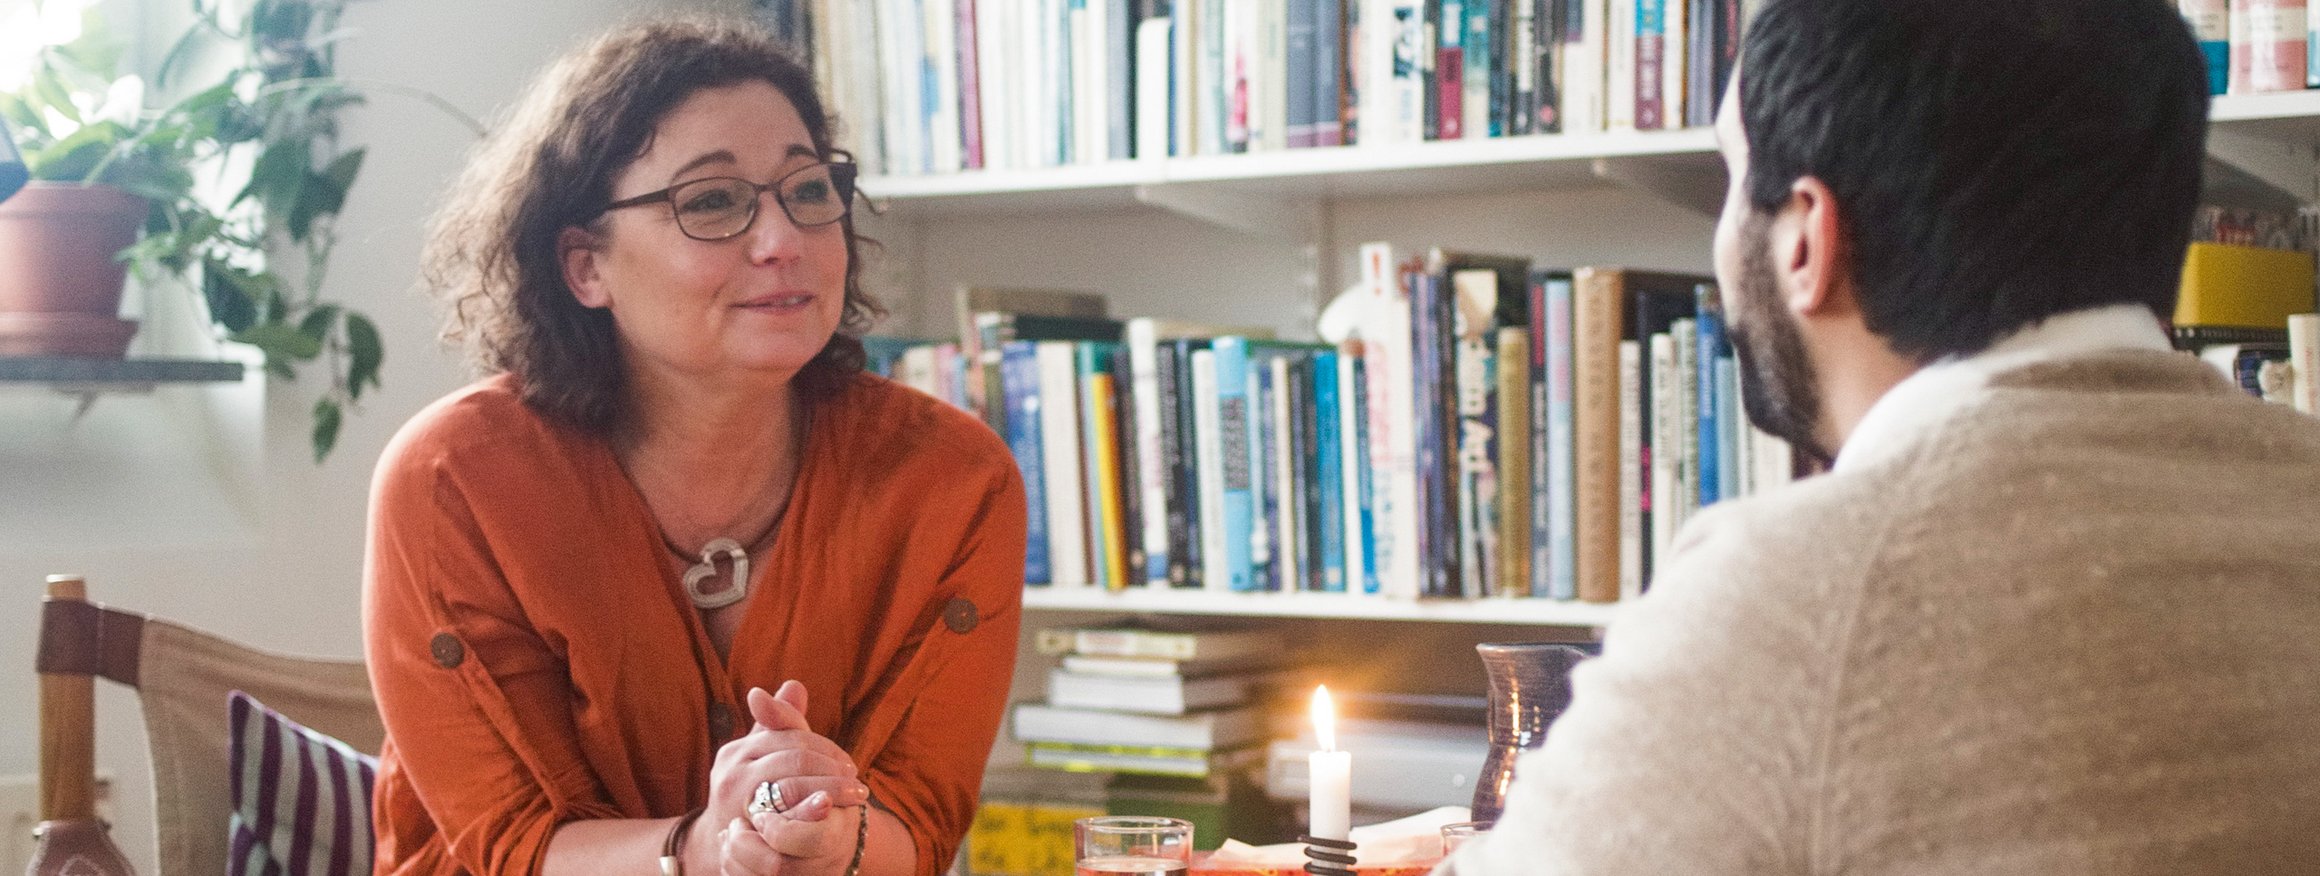 Eine Theapeutin sitzt mit ihrem Patient vor einer Bücherwand, neben ihr ein Beistelltisch mit einer brennenden Kerze